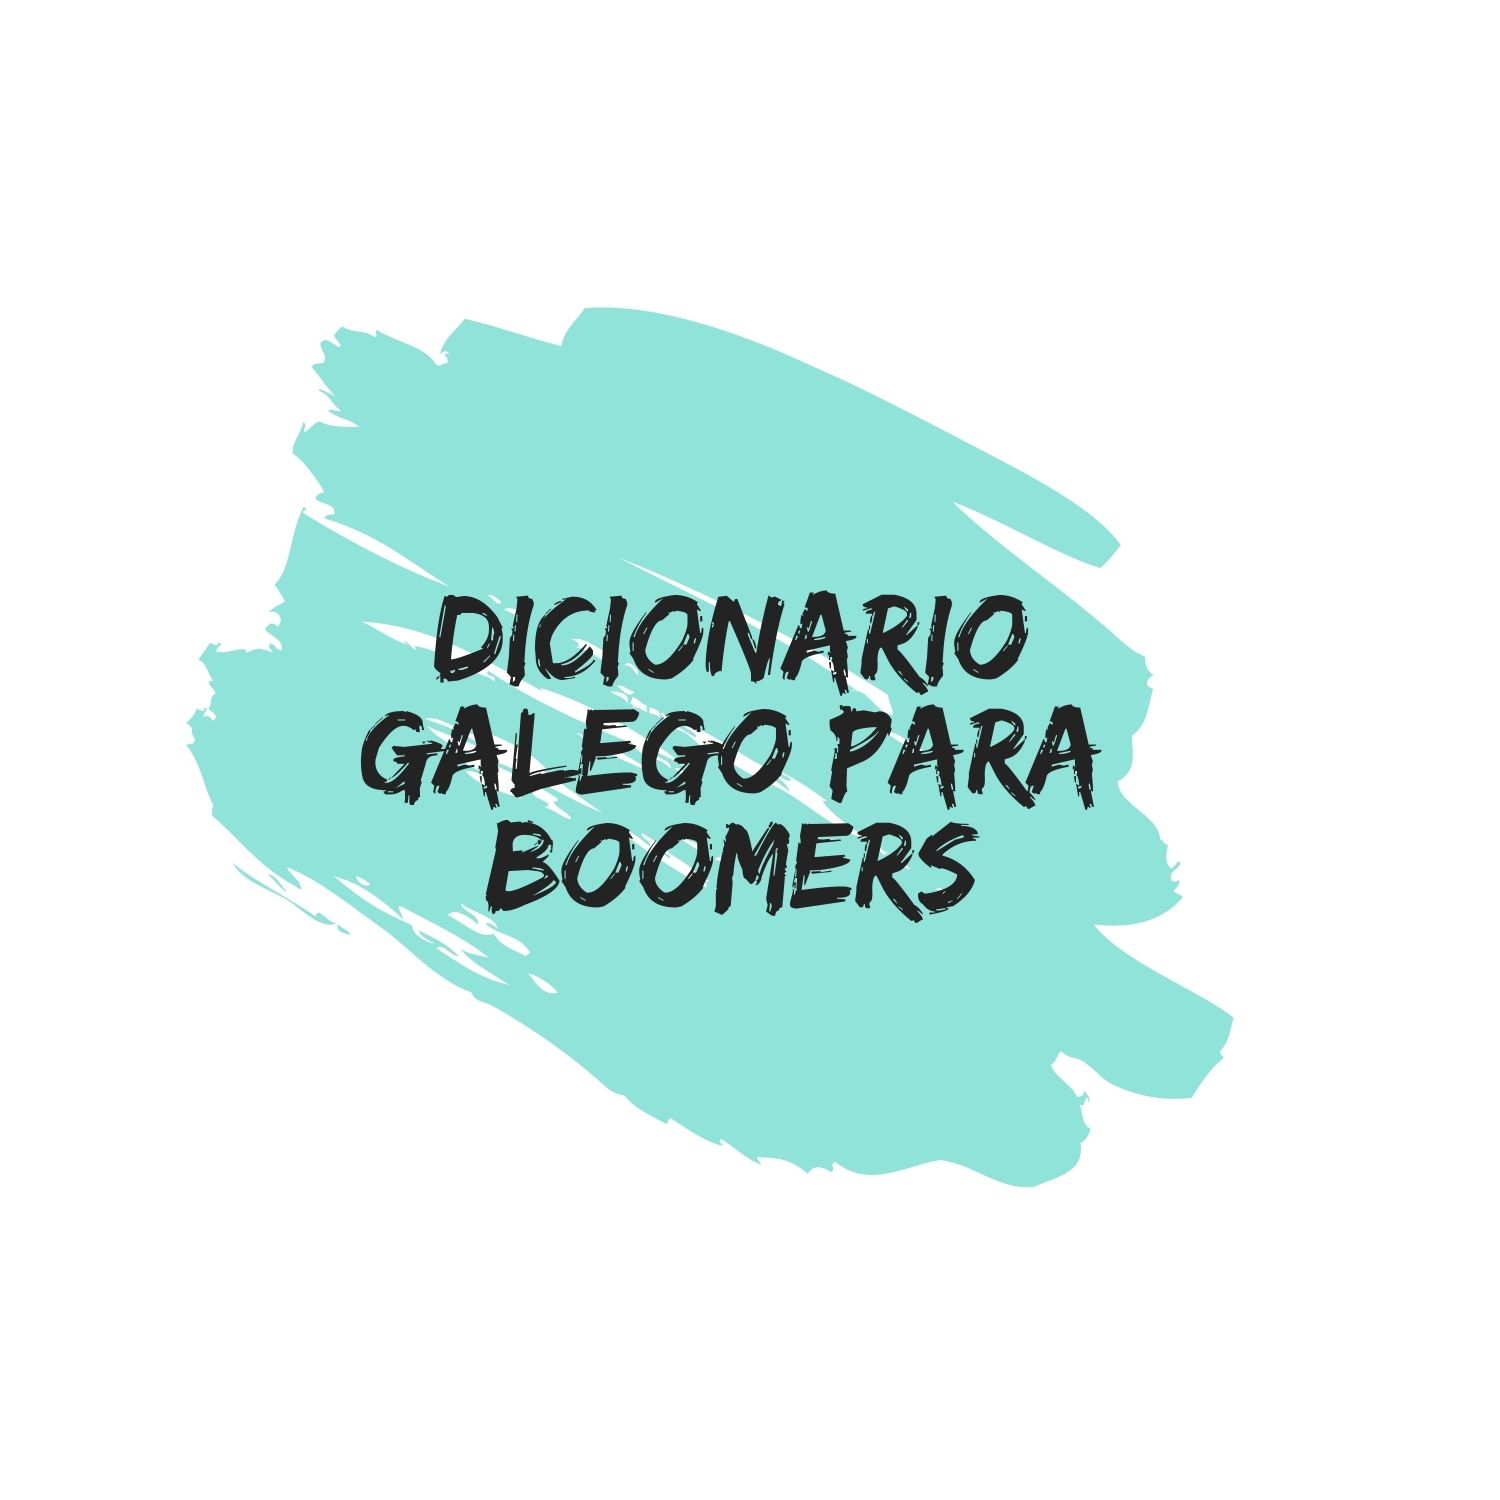 Dicionario galego para boomers